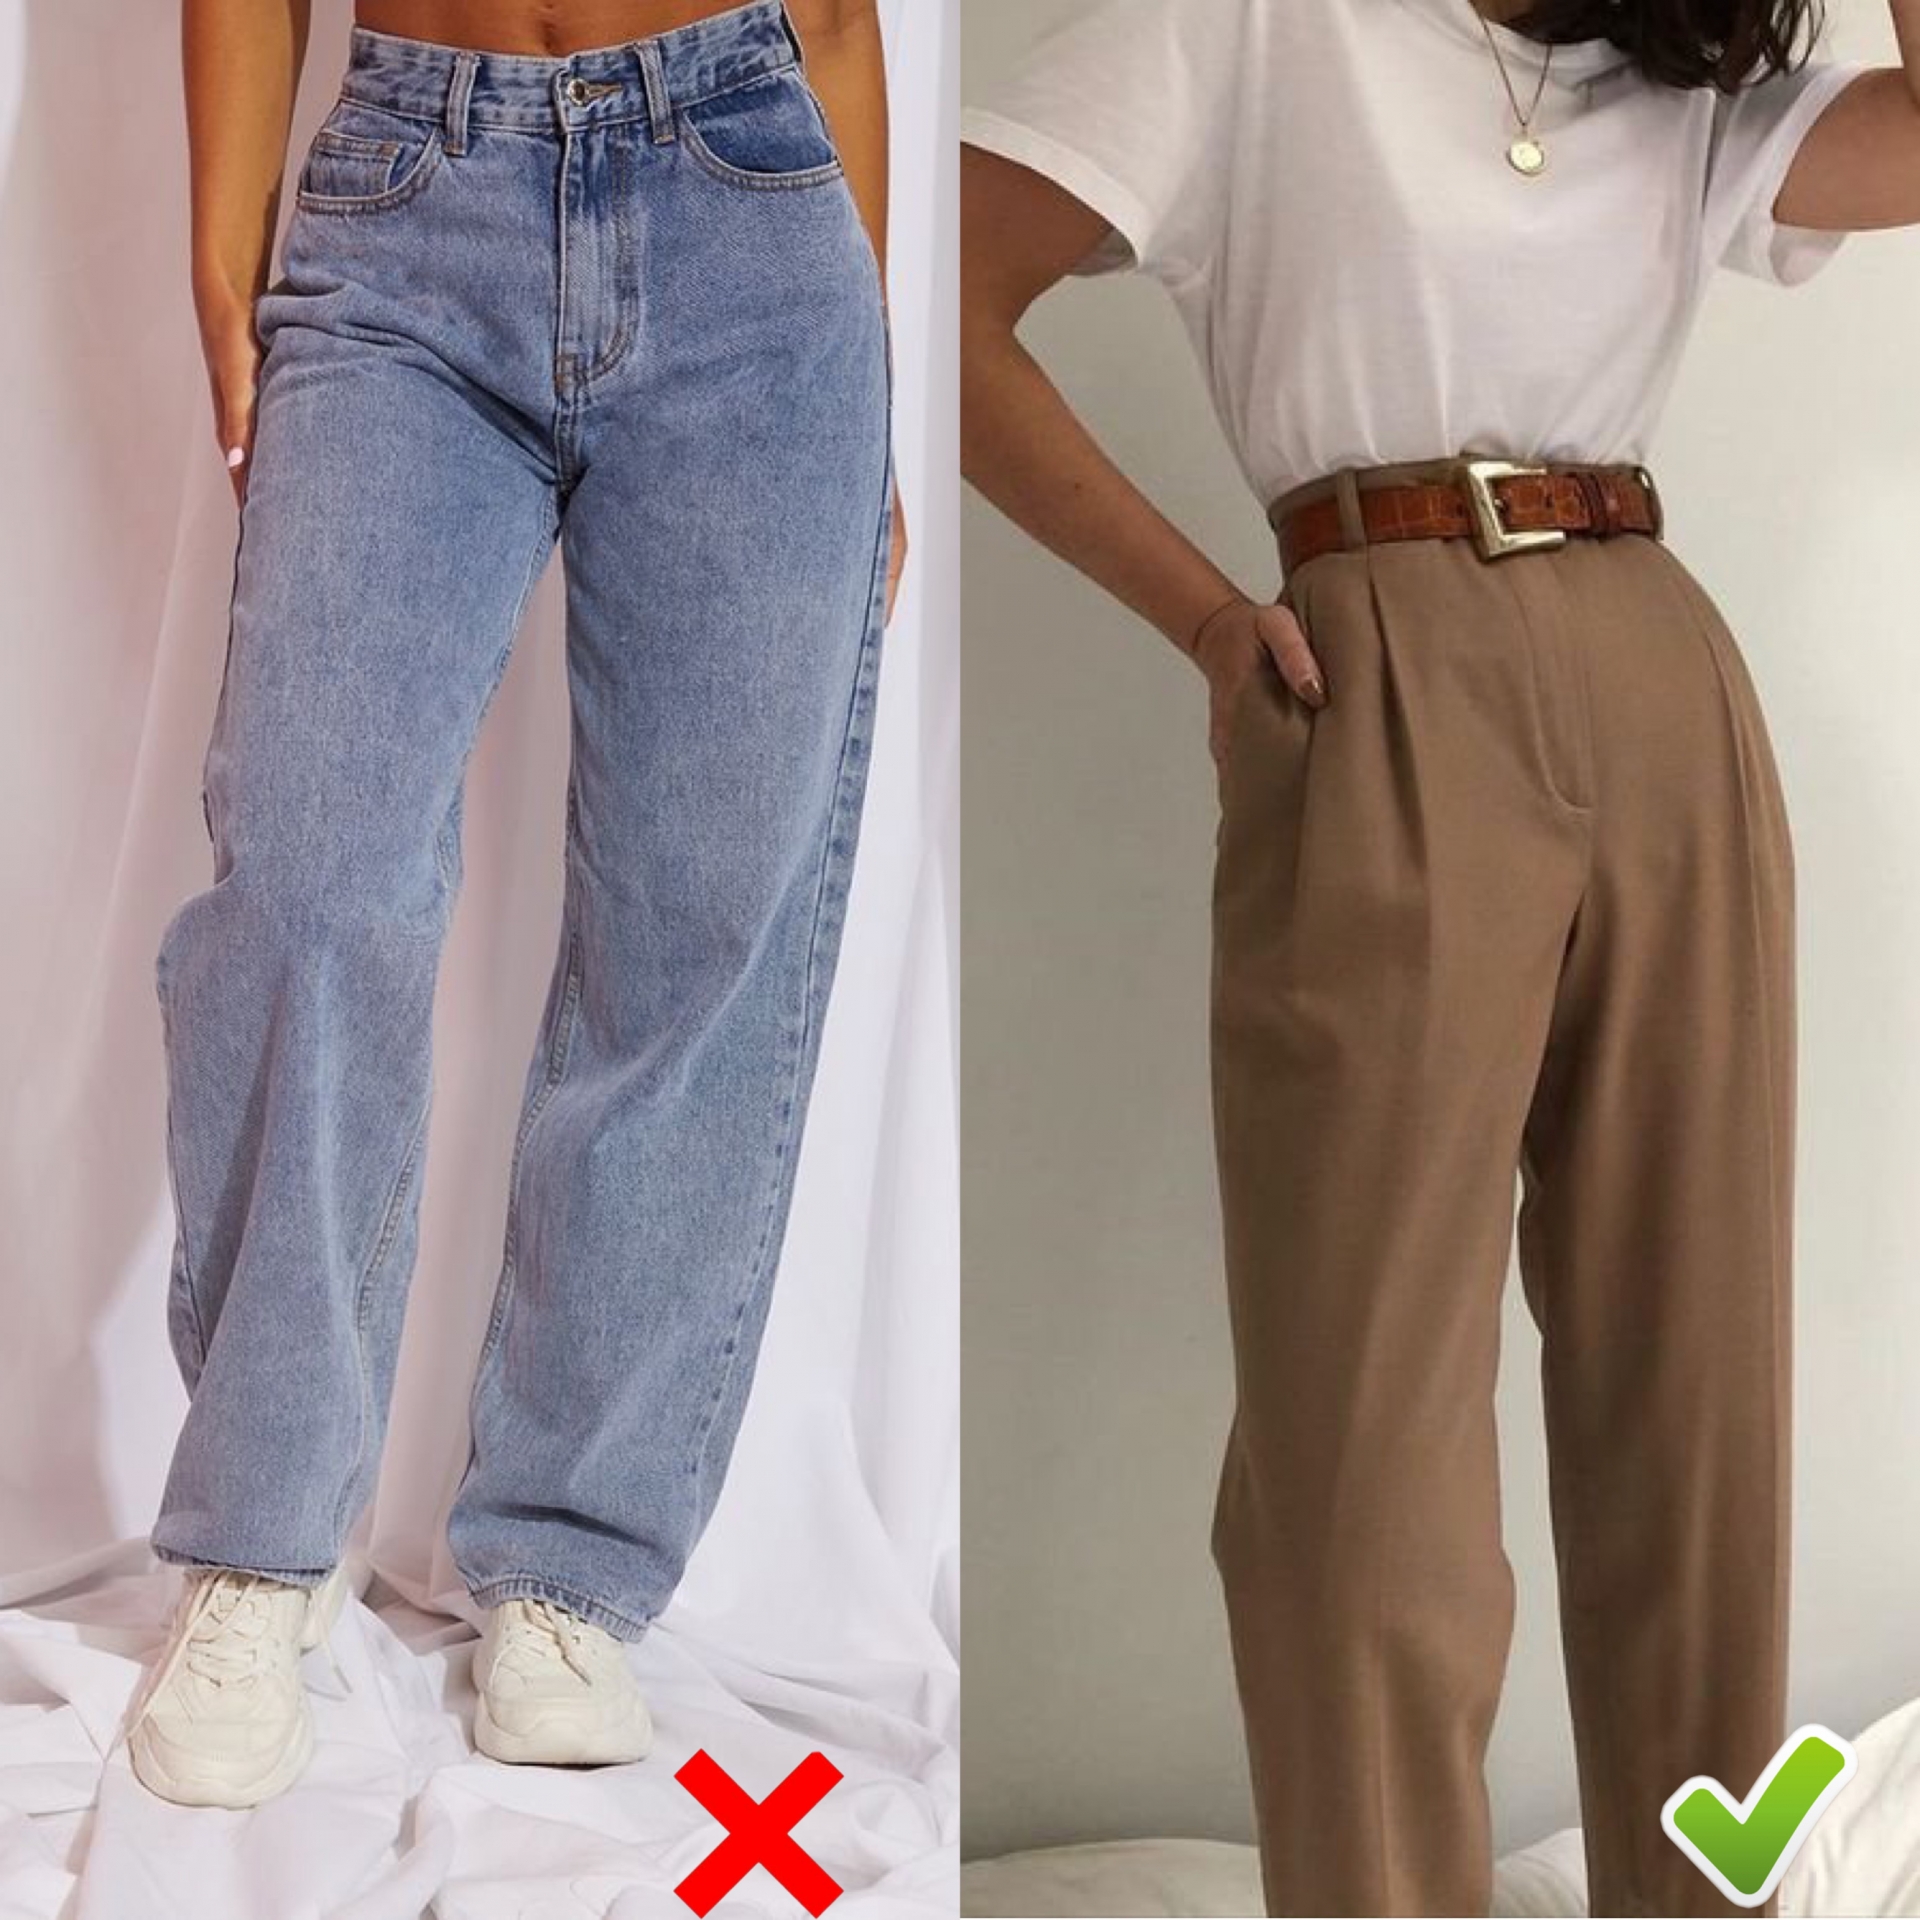 Thay vì chọn quần quá rộng để lộ nhược điểm, bạn nên chọn những chiếc quần jeans ôm vừa phải và có phần ống không quá rộng. Ngoài ra, những chiếc quần vải ống suông xếp li cũng là lựa chọn lý tưởng, giúp bạn 'ăn gian' chiều cao hiệu quả mà lại rất thanh lịch.